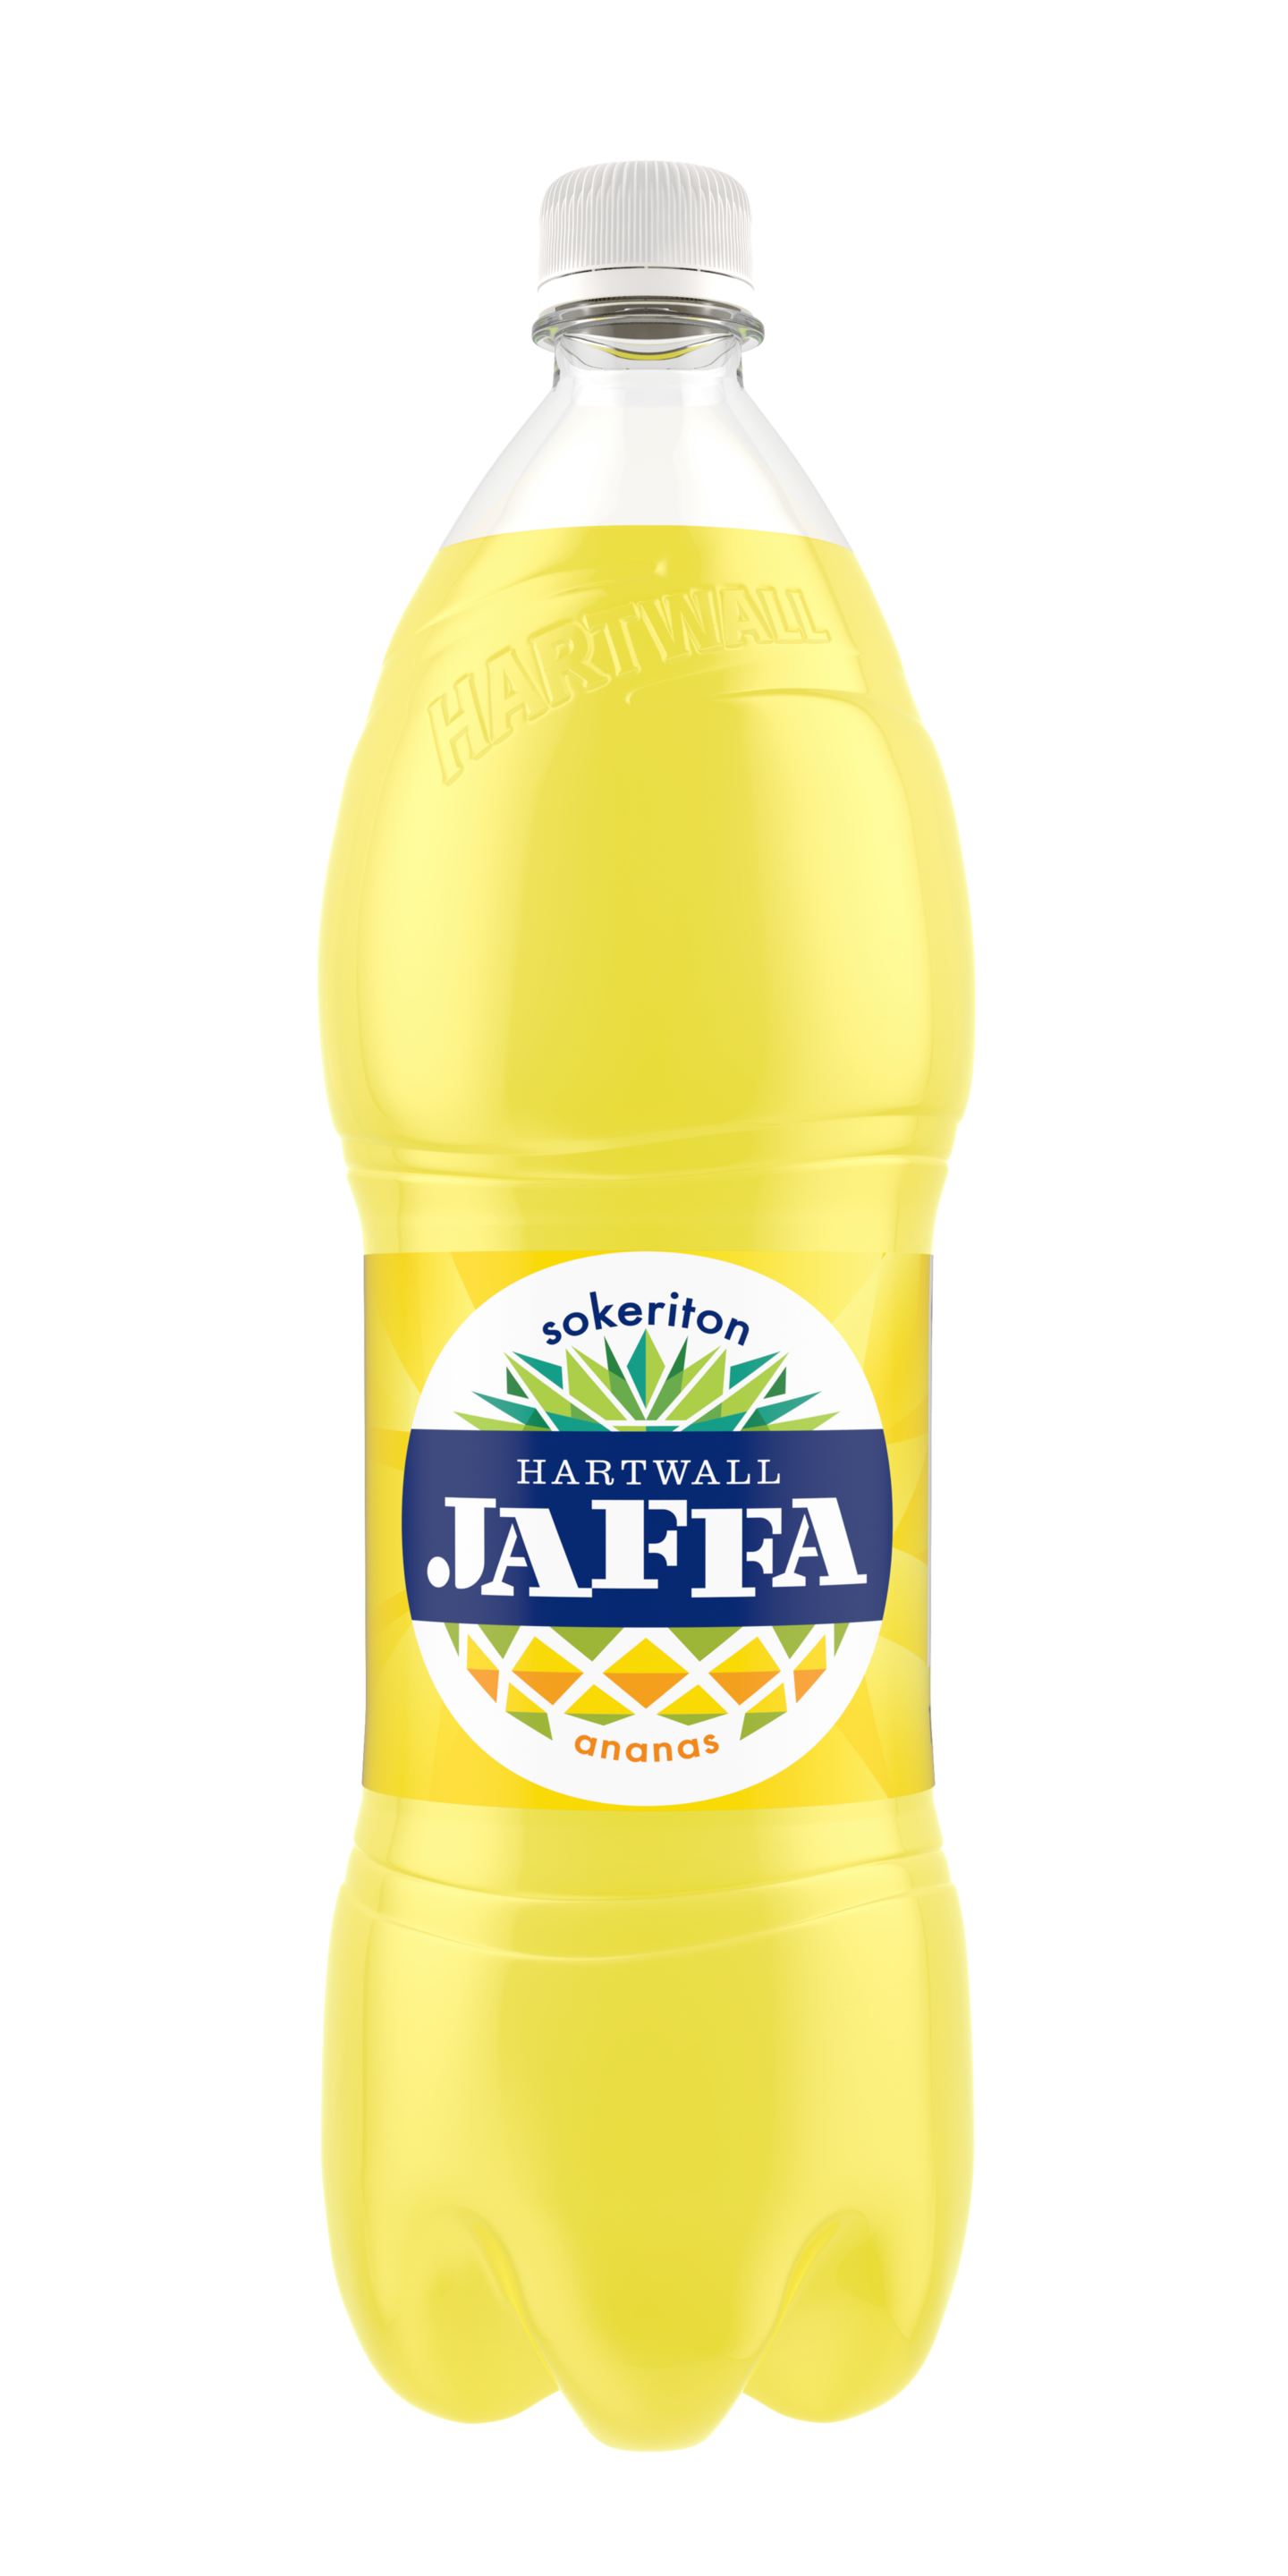 Hartwall Jaffa ananas sokeriton 1,5l